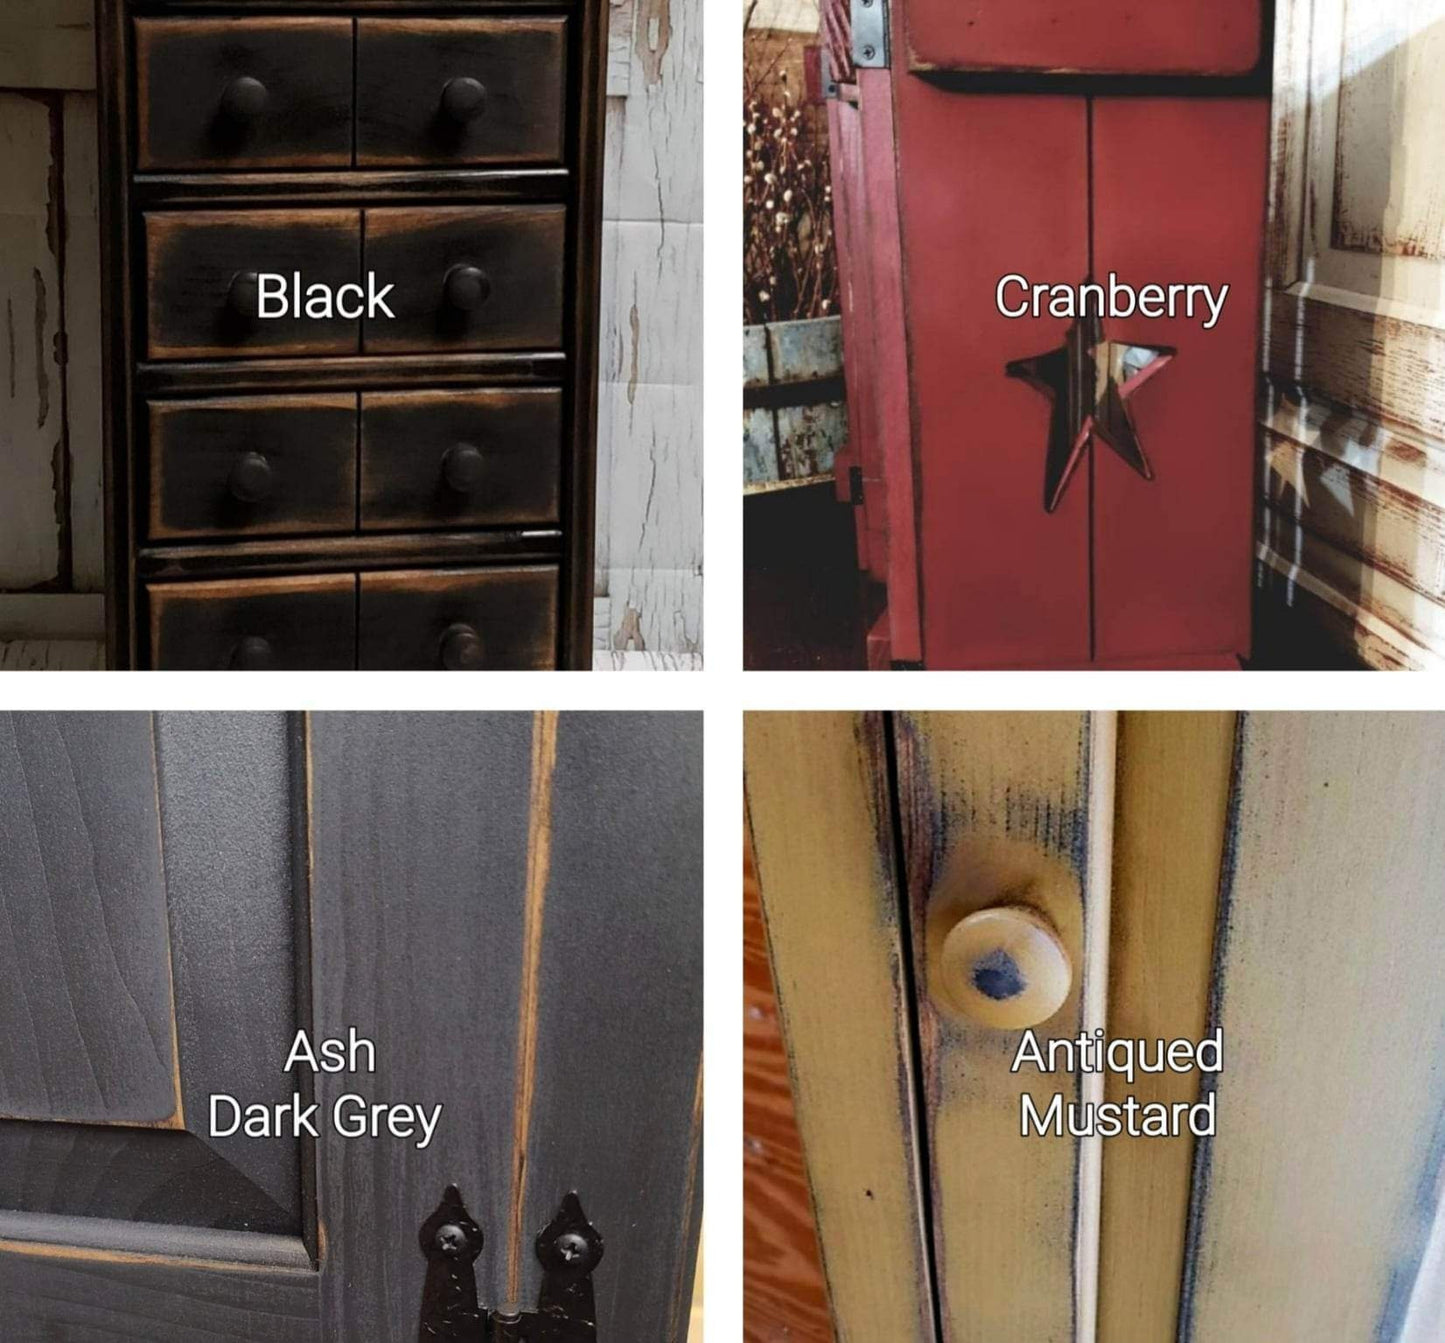 Primitive cabinet / Rustic furniture / Jelly cabinet / Farmhouse decor